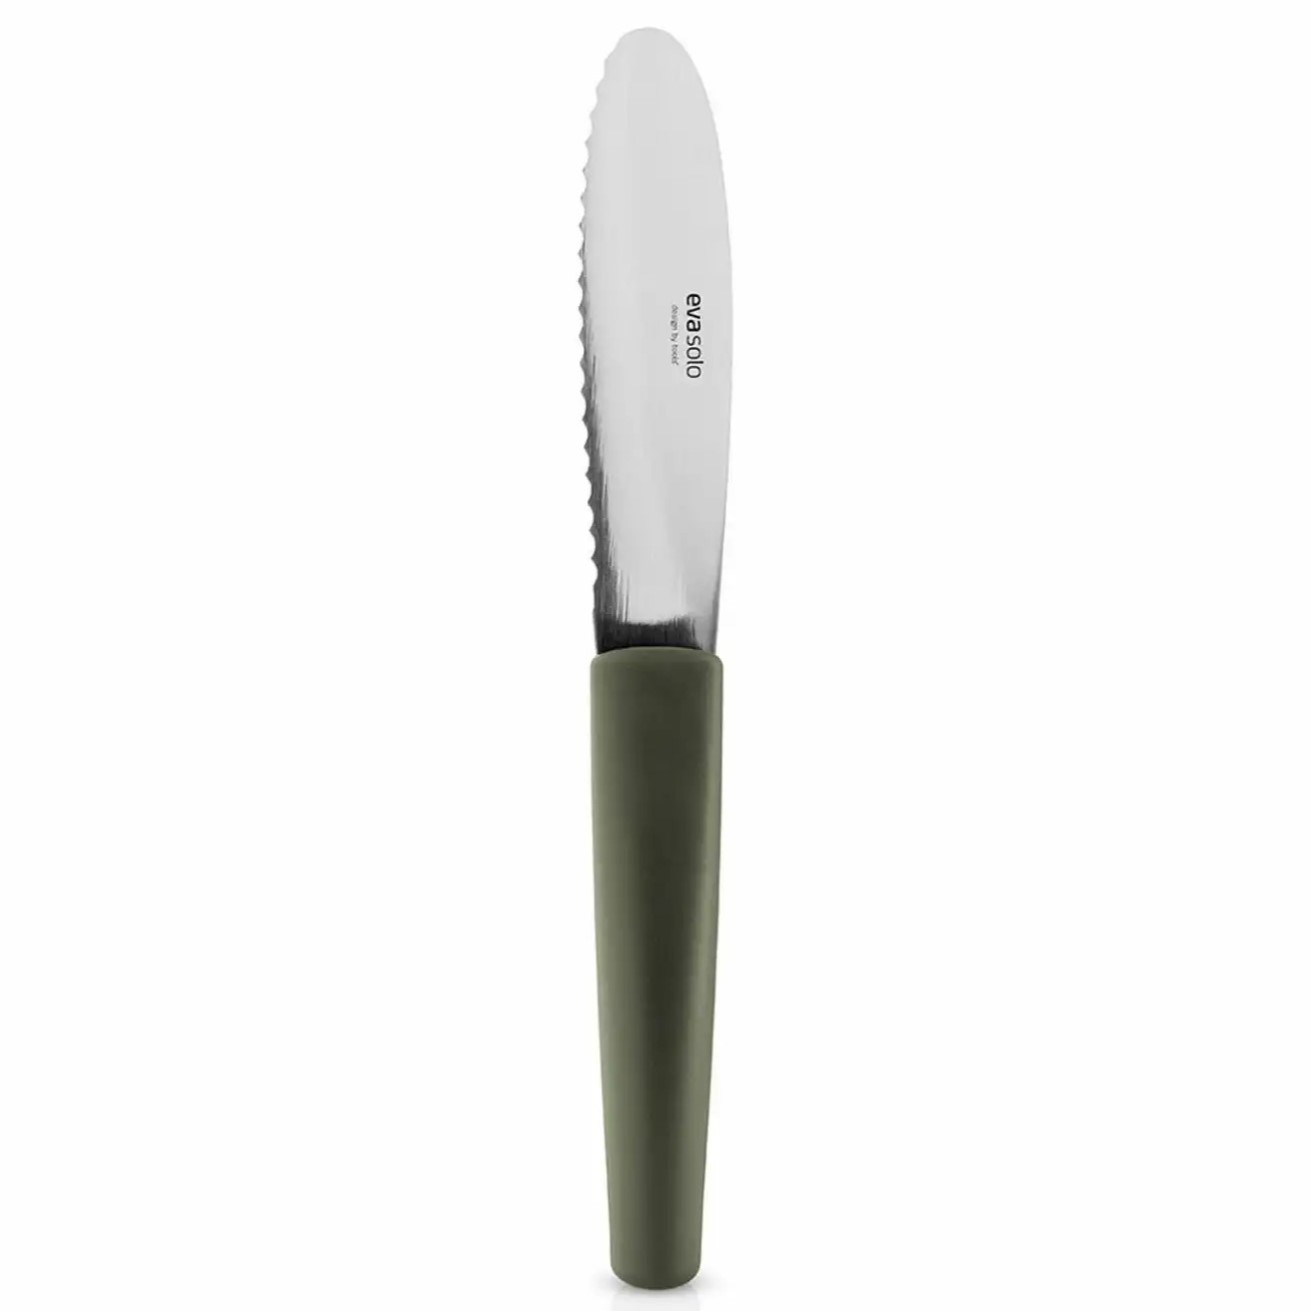 Nůž na máslo GREEN TOOLS 21 cm, zelená, nerezová ocel, Eva Solo